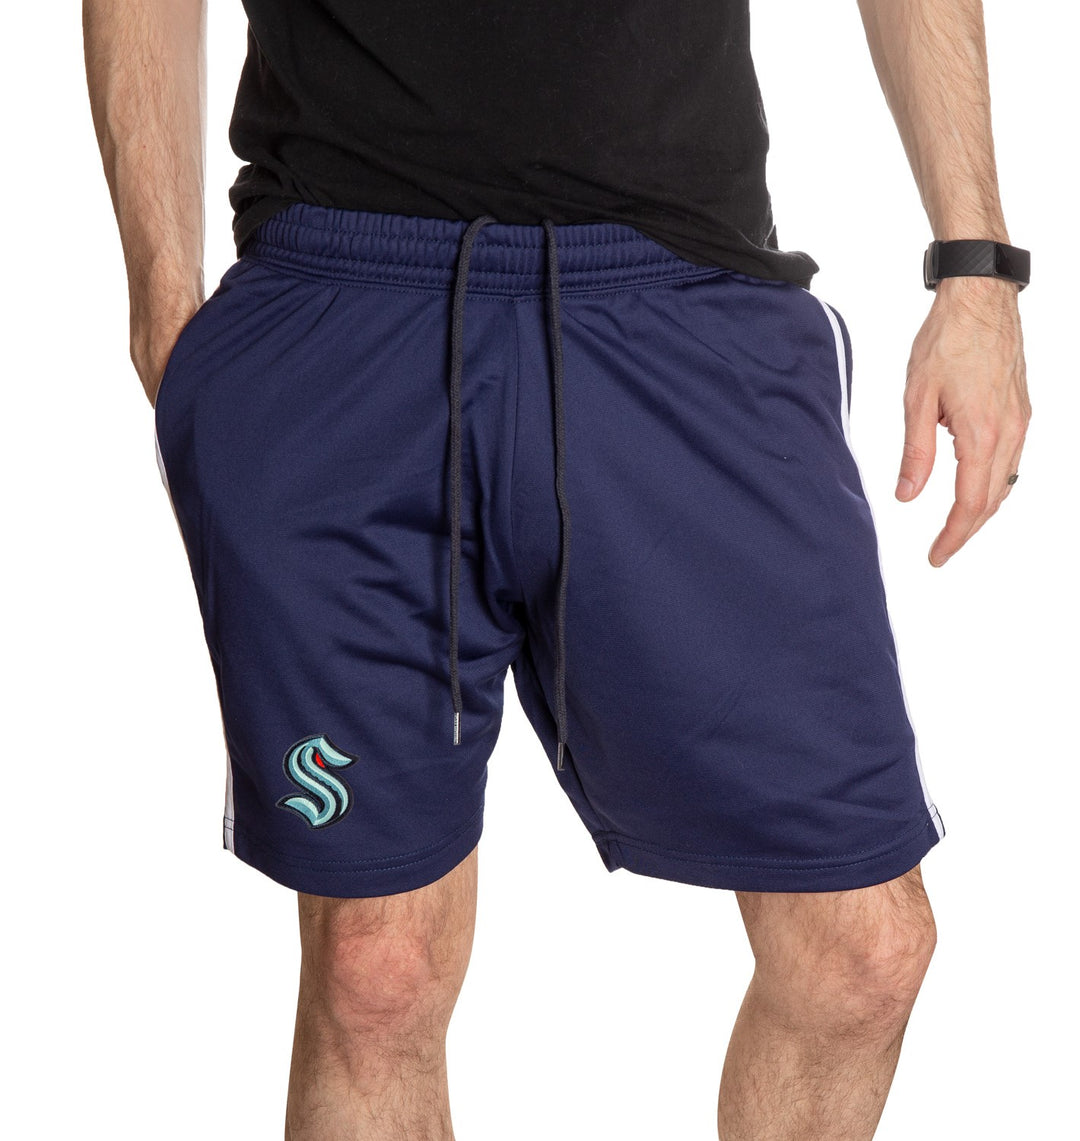 Seattle Kraken Two-Stripe Shorts in Blue, Front View.